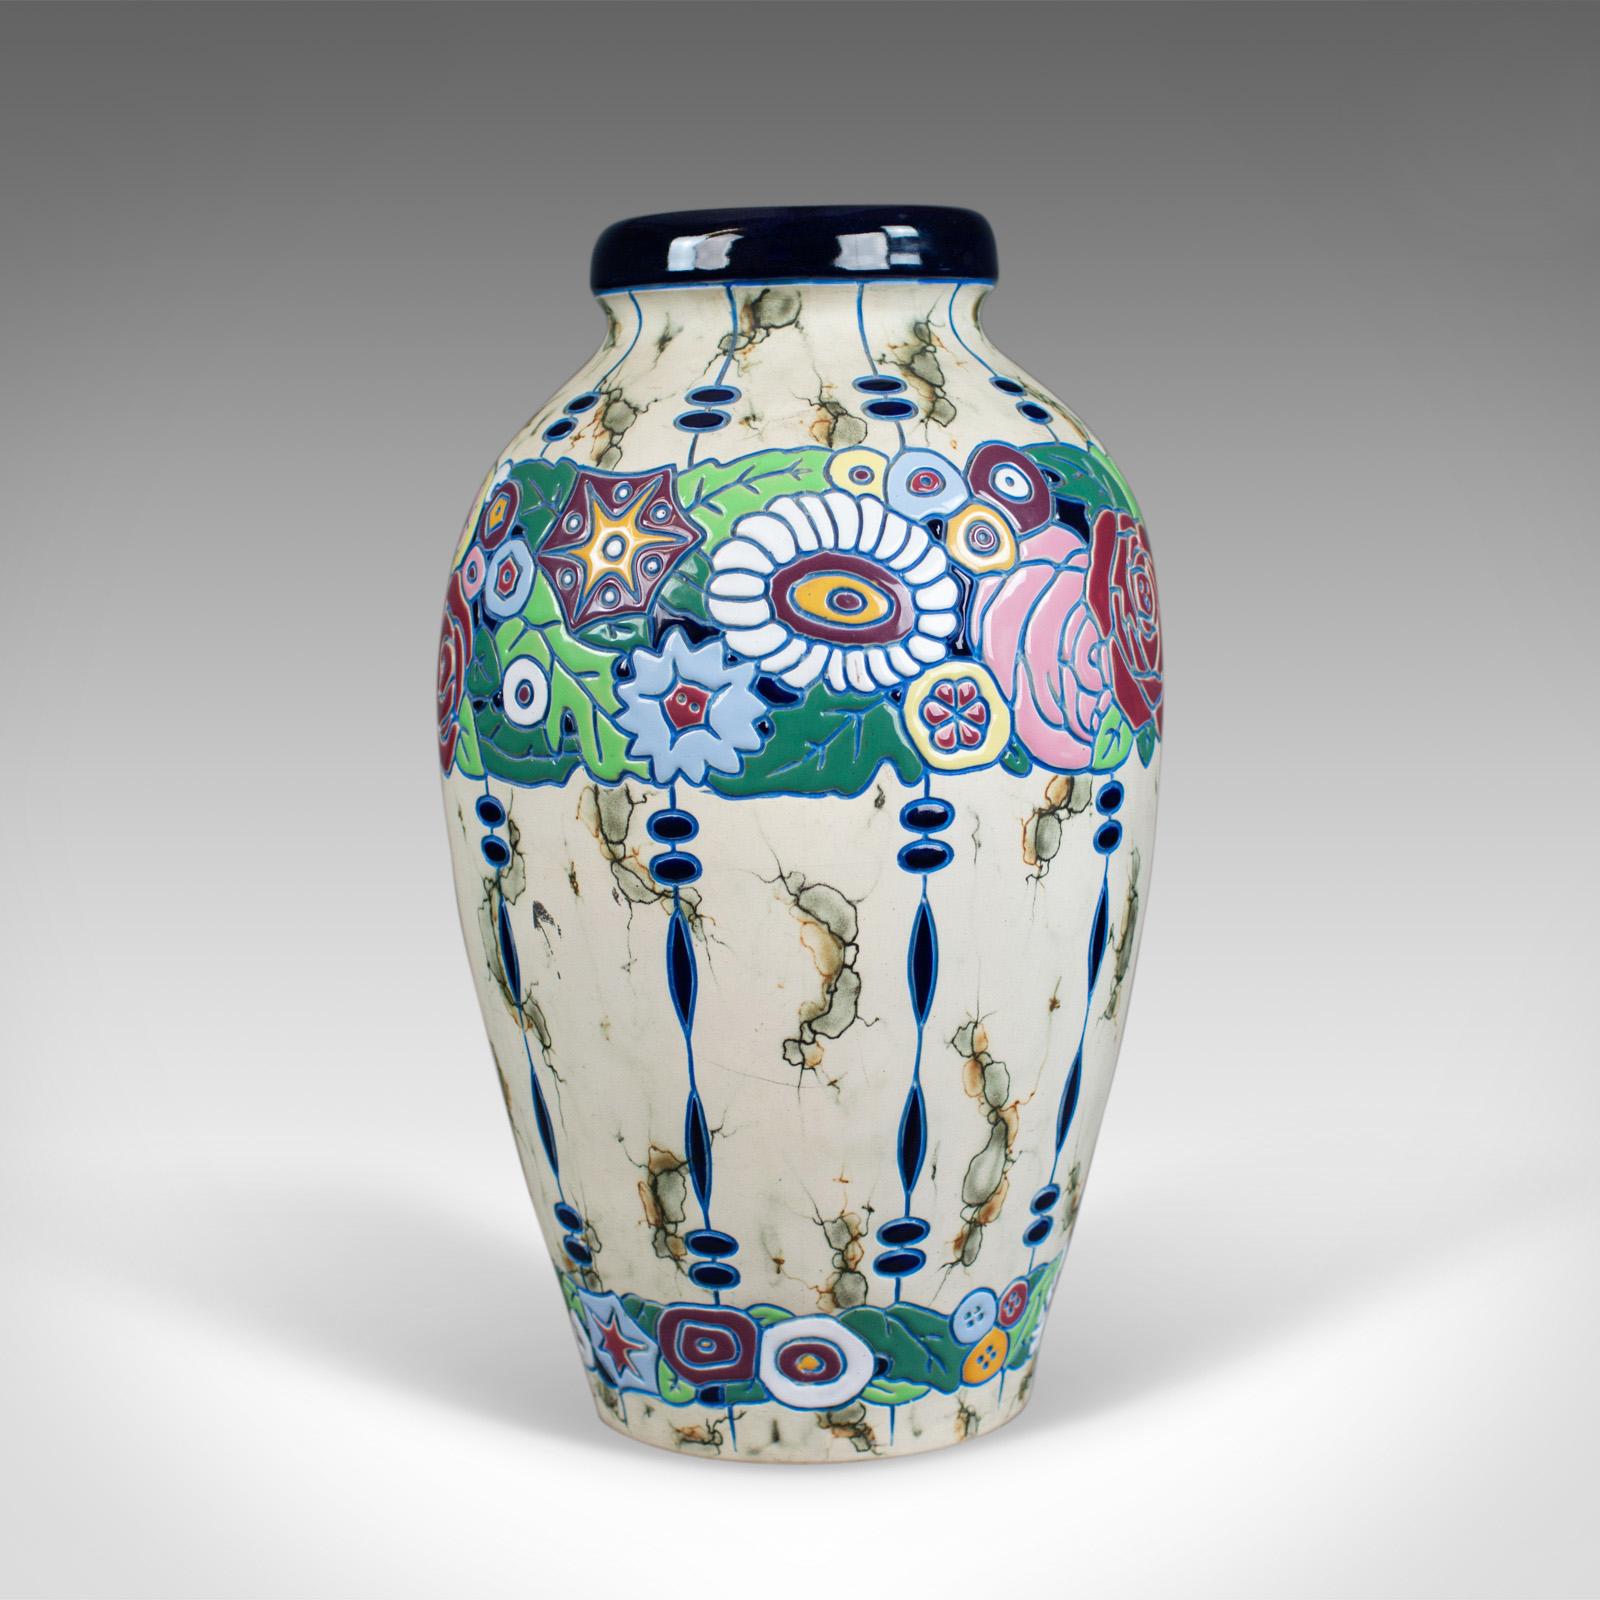 Dies ist eine große Vintage-Balustervase, eine tschechoslowakische Amphora-Keramikvase aus der Mitte des 20. Jahrhunderts.

Von klassischer Form und in guter Proportion
Von hoher handwerklicher Qualität, frei von Schäden
Sockel mit der